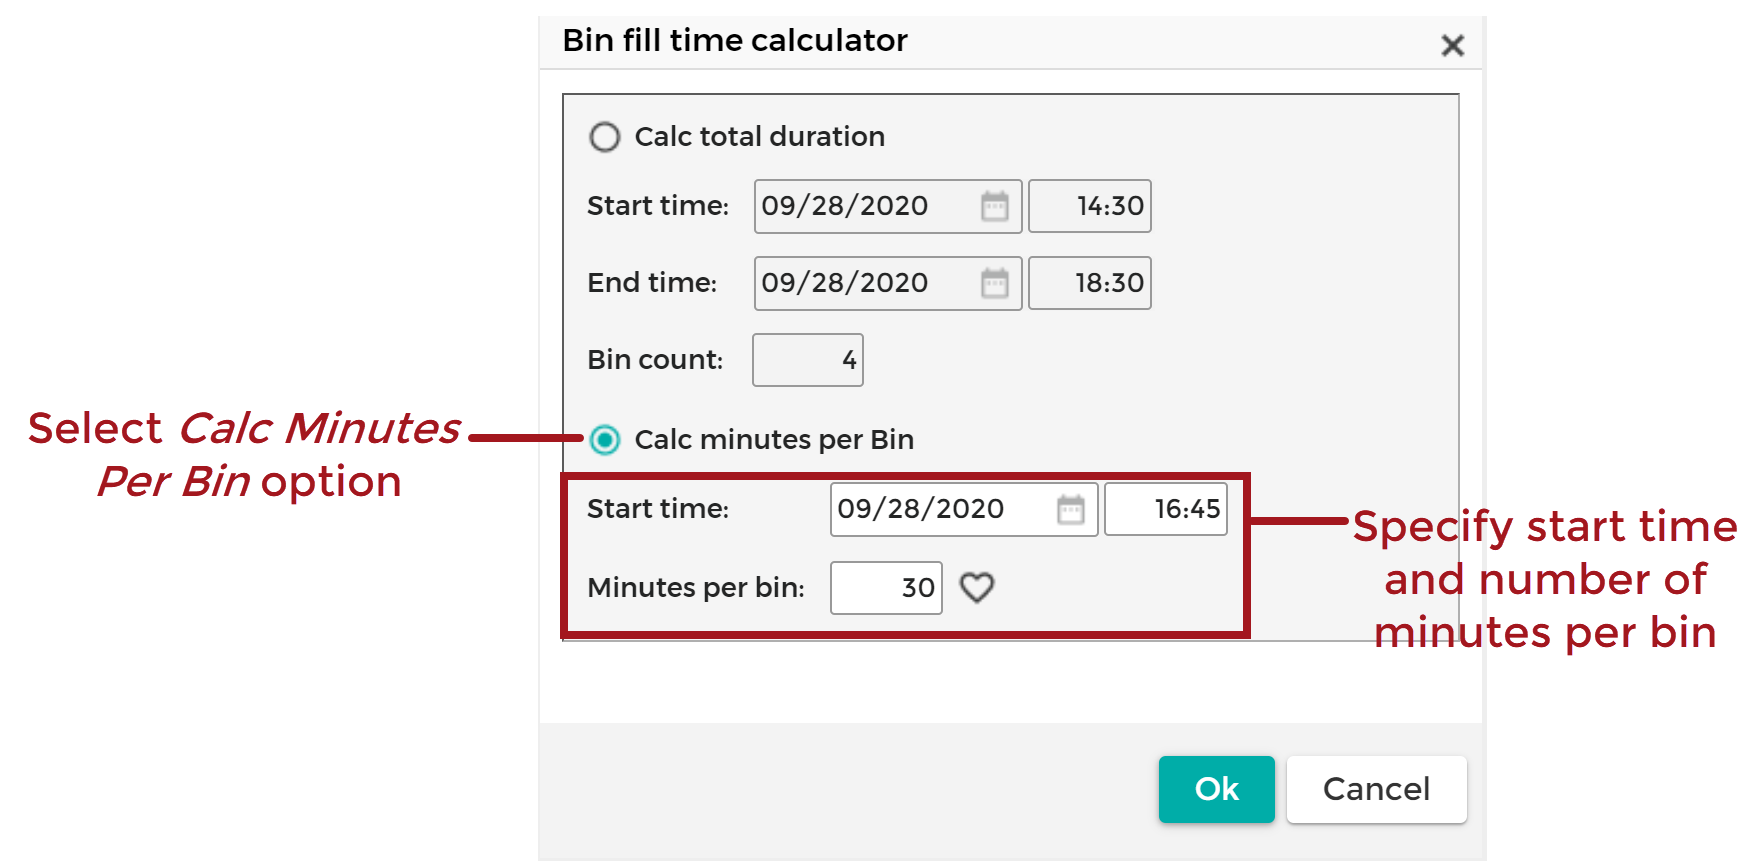 Bin_FIll_Time_Calculator_-_Calc_Minutes_Per_Bin_20200928.png